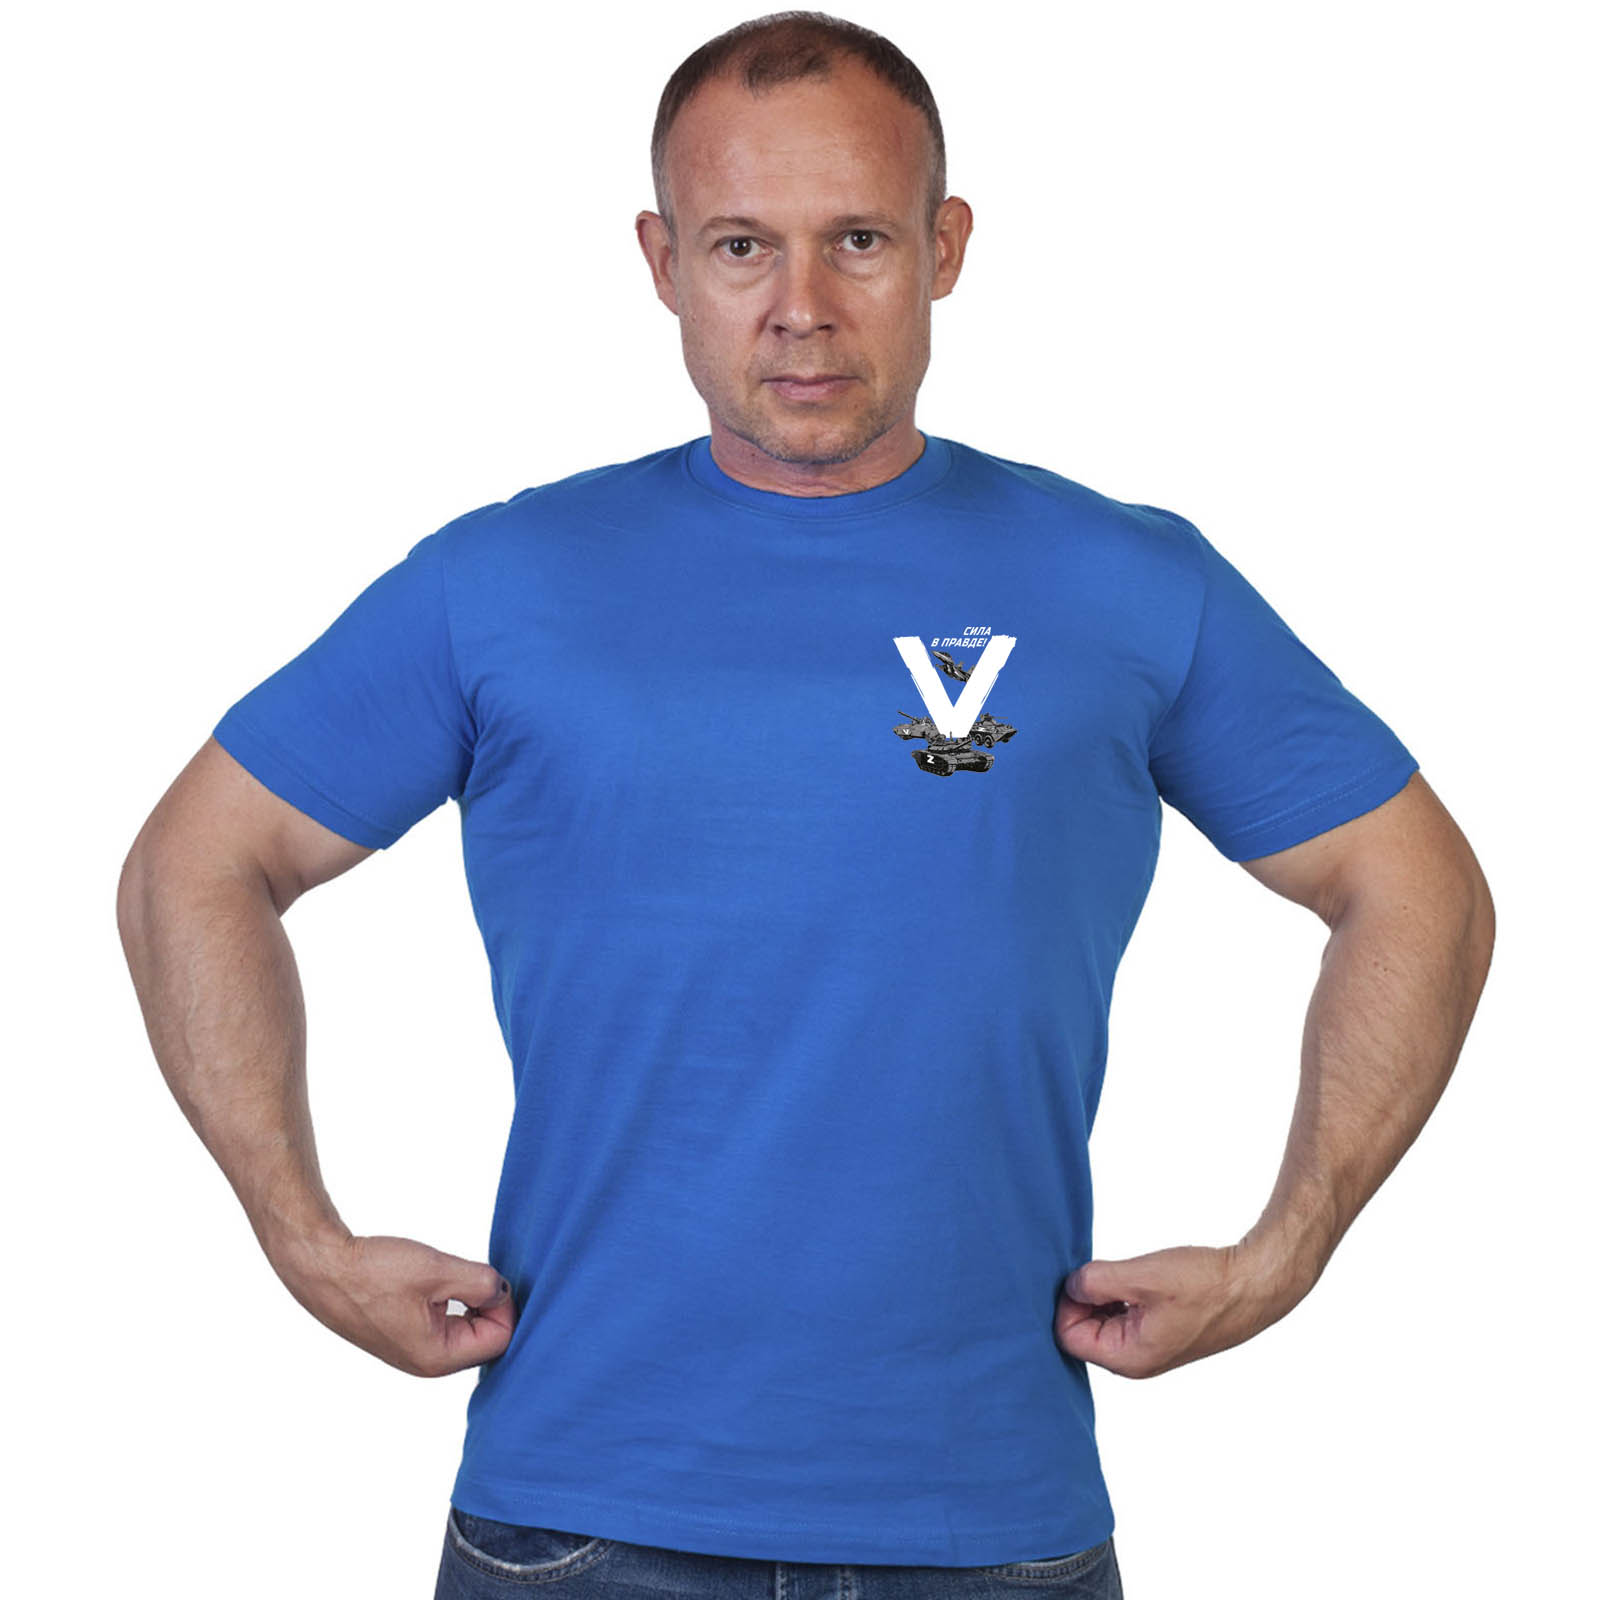 Васильковая футболка с термотрансфером «V»